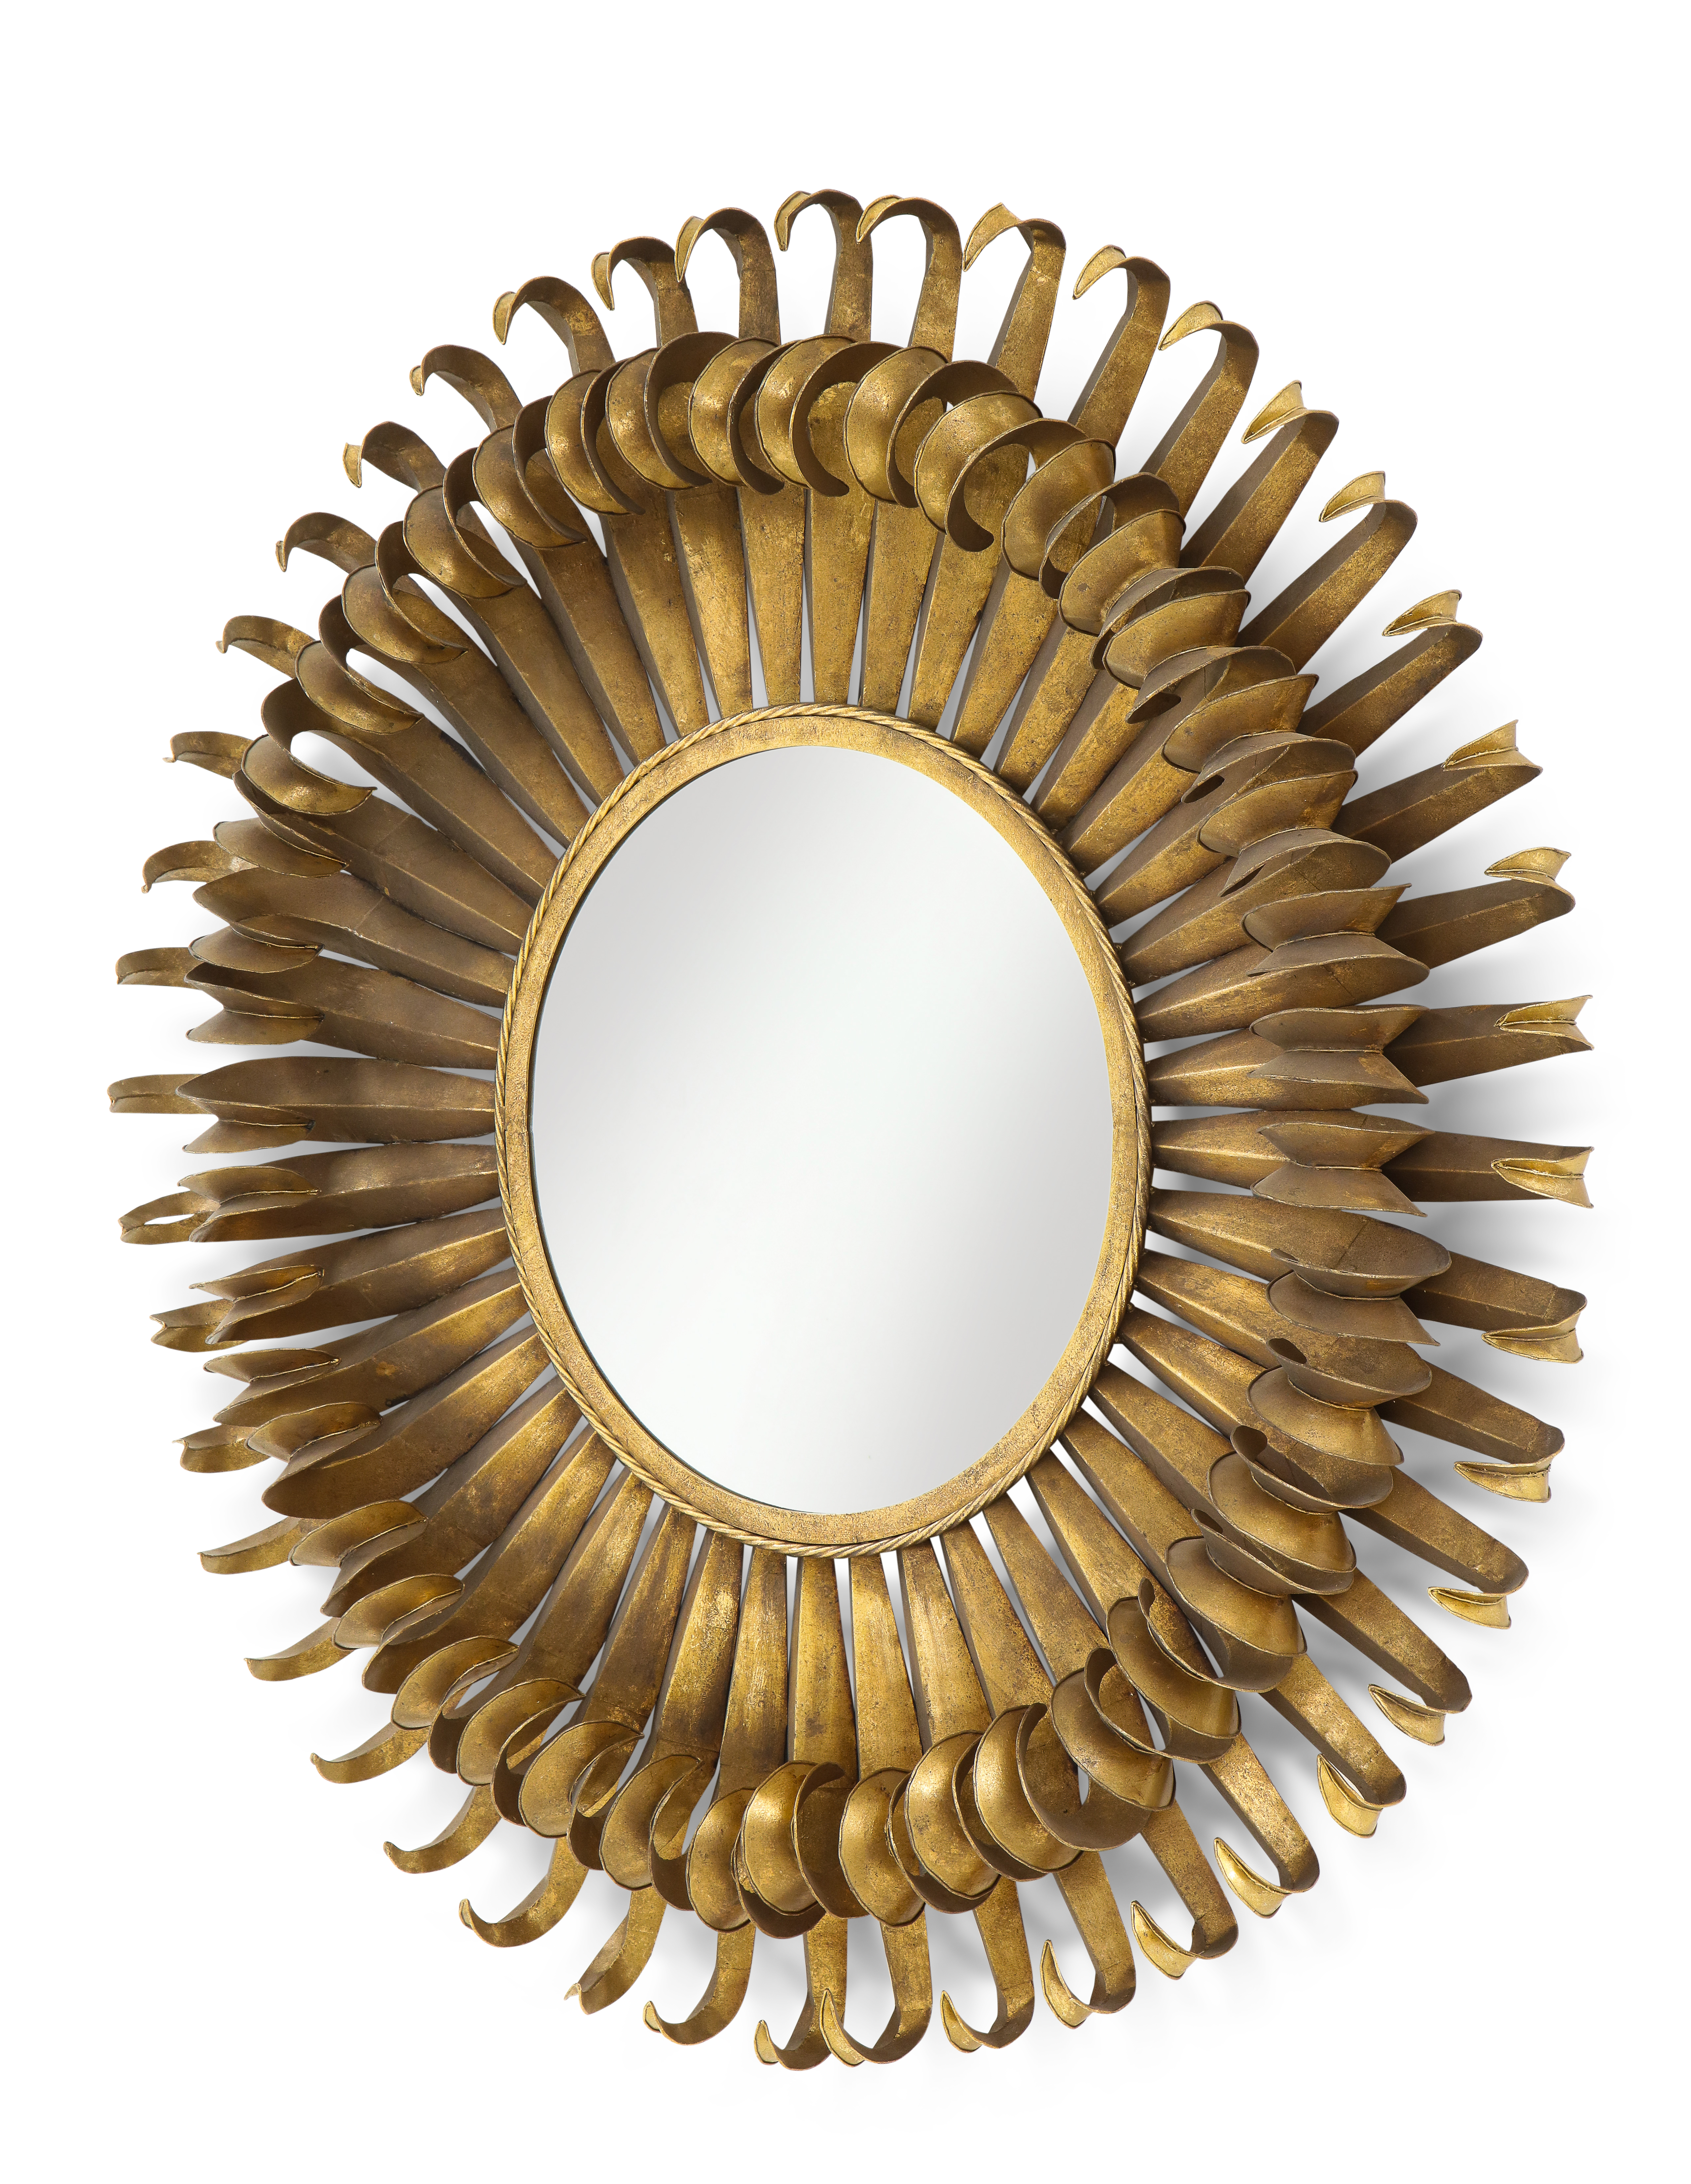 A Modernist round mirror